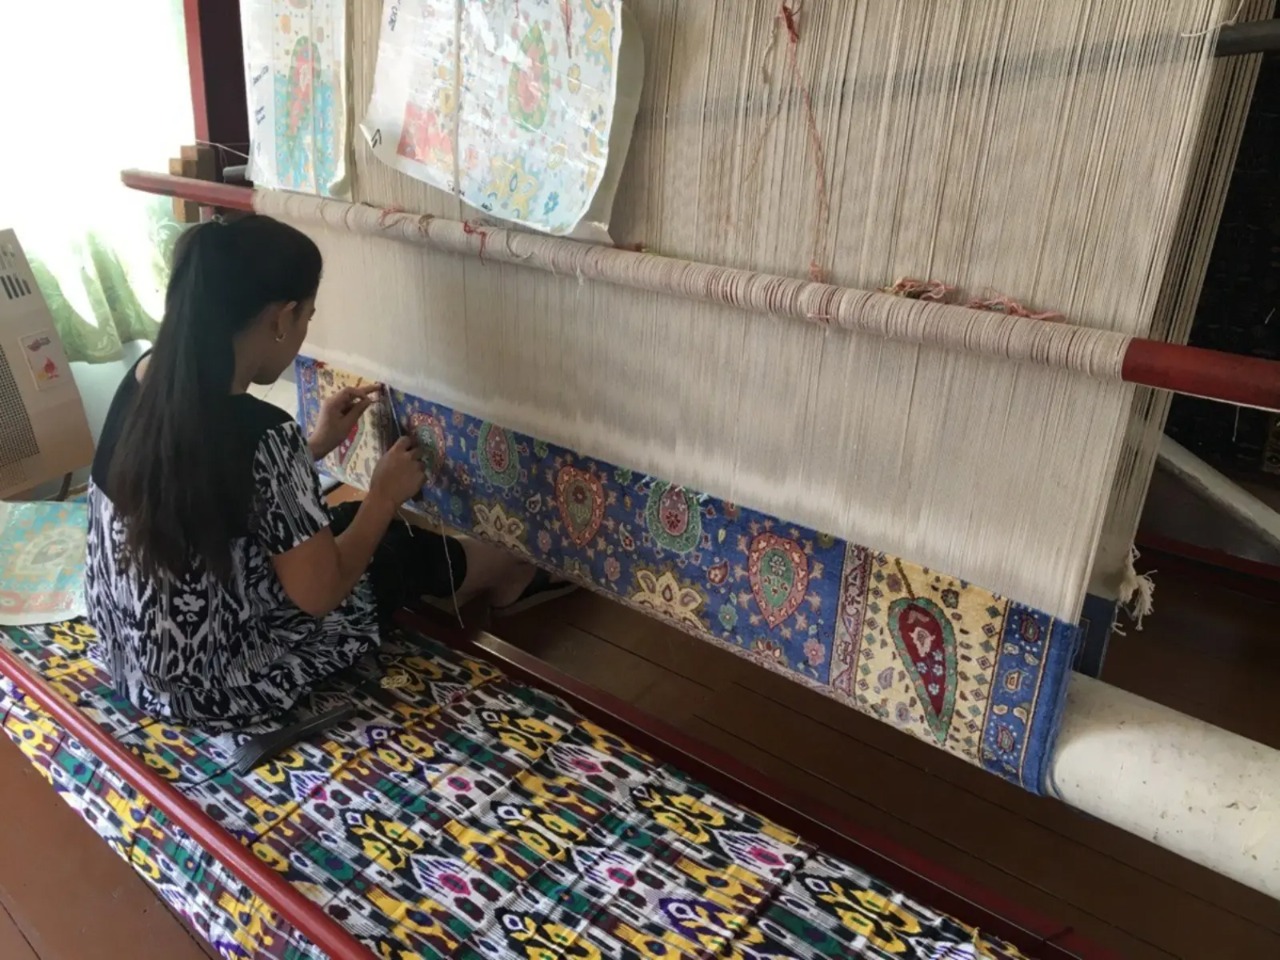 Народные ремёсла Самарканда: от ковров до гончаров | Цена 61.75€, отзывы, описание экскурсии